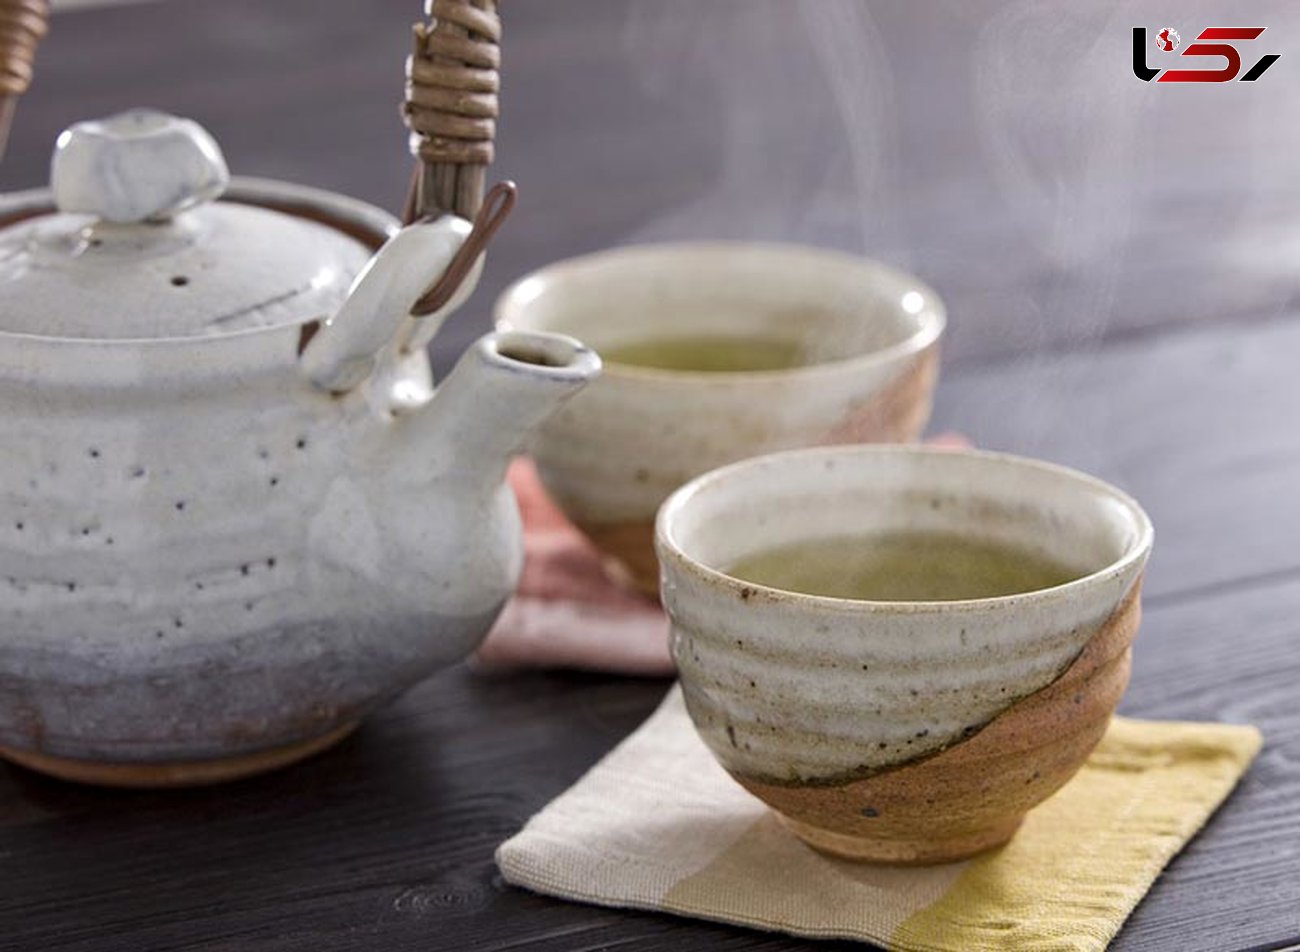 درمان نفخ معده با چای های گیاهی